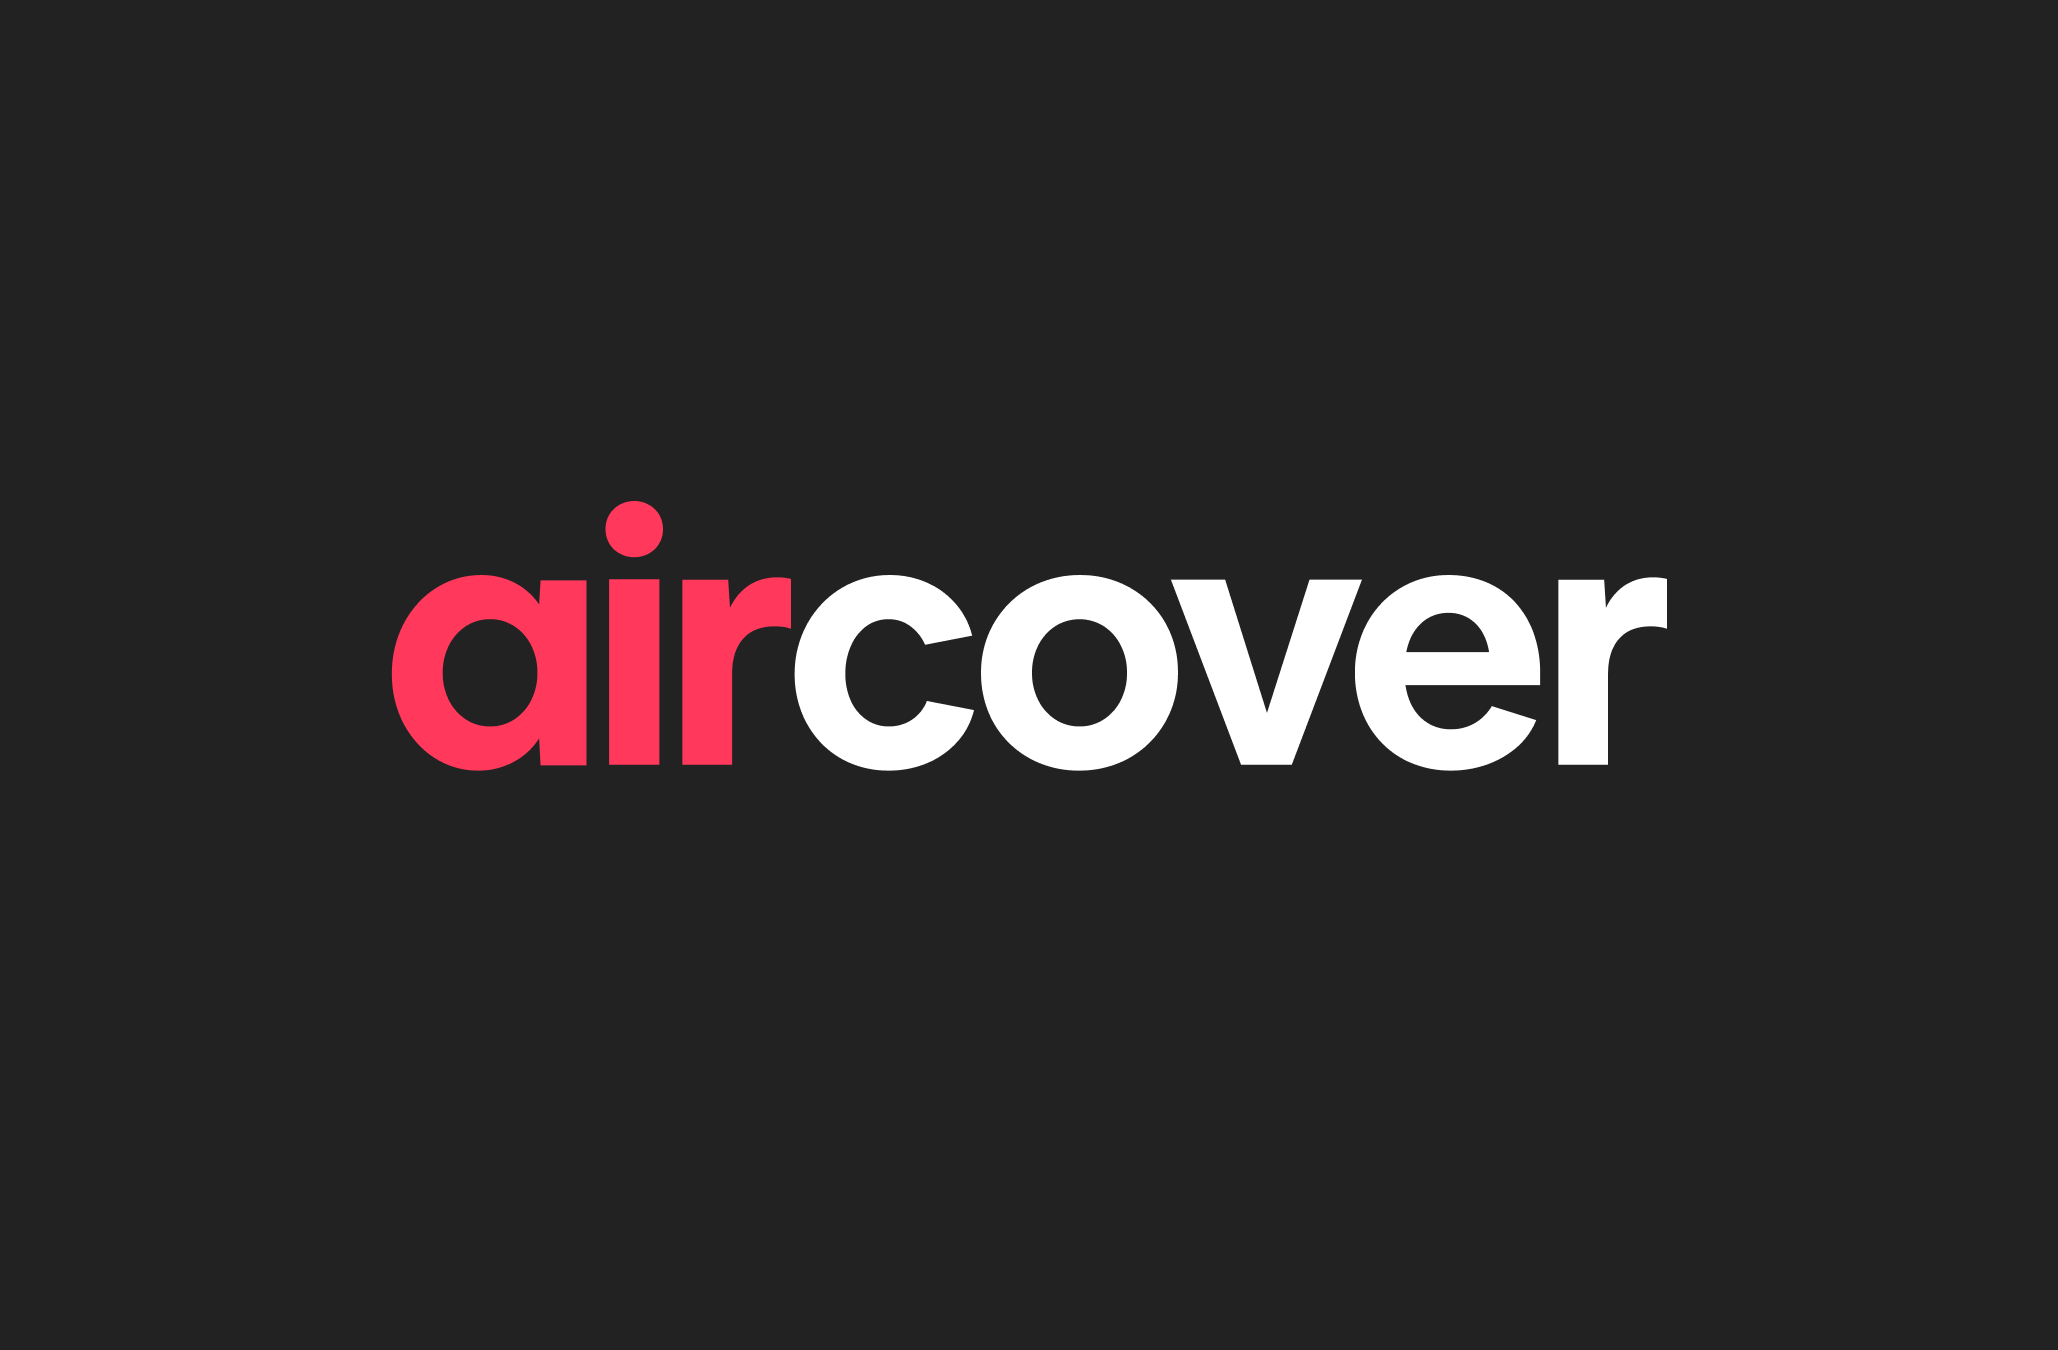 Logotip AirCover-a s crvenim i bijelim slovima na crnoj pozadini.